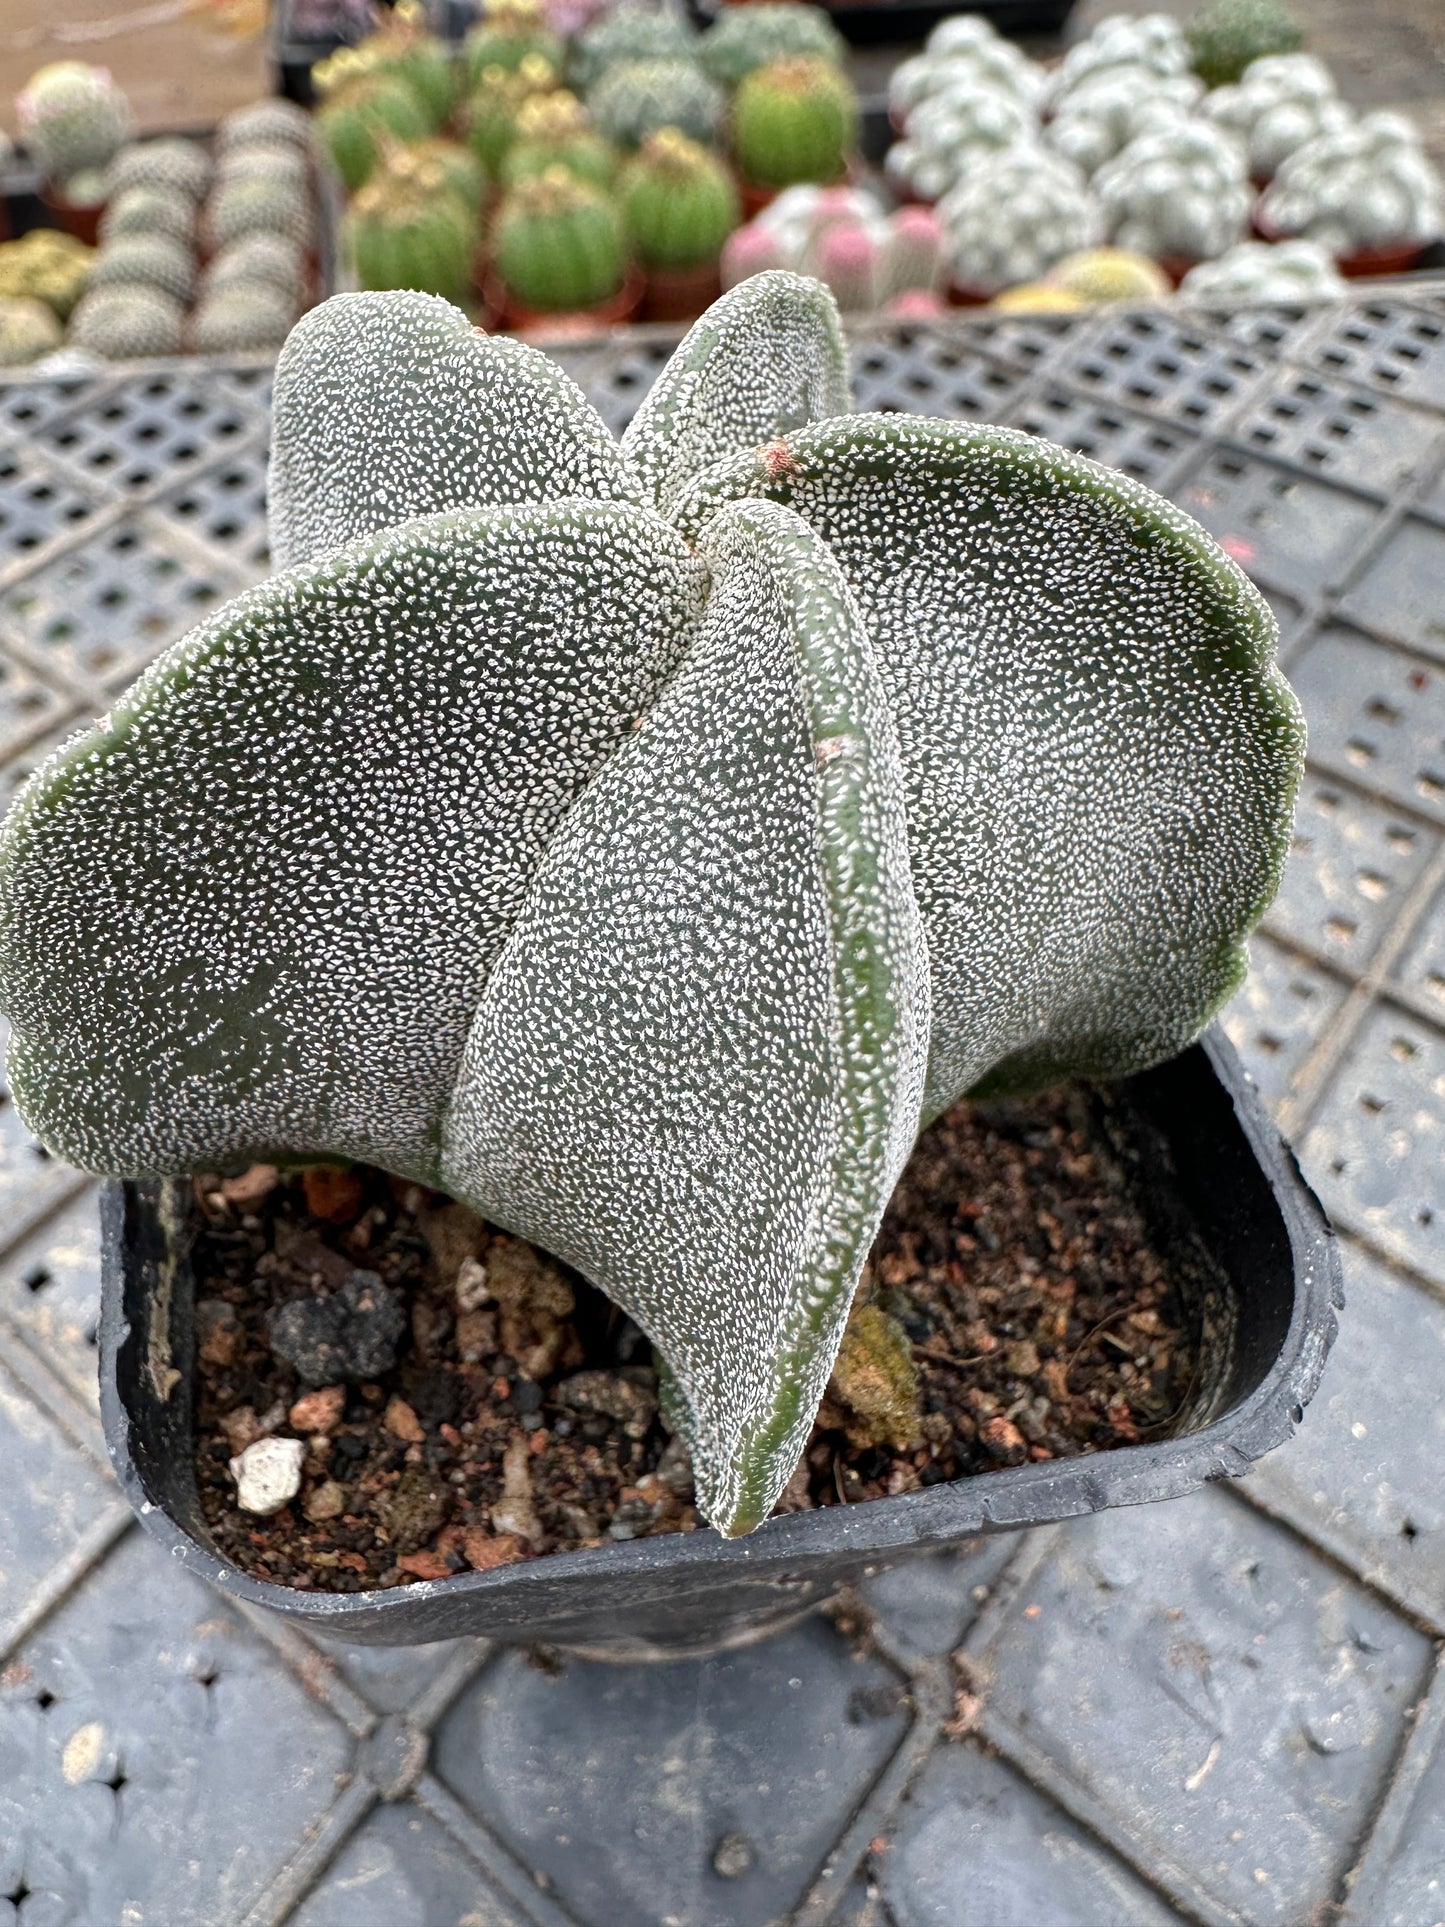 Astrophytum myriostigma 5cm/ Kaktus Echinopsis tubiflora / Bunte natürliche lebende Pflanzen Sukkulenten